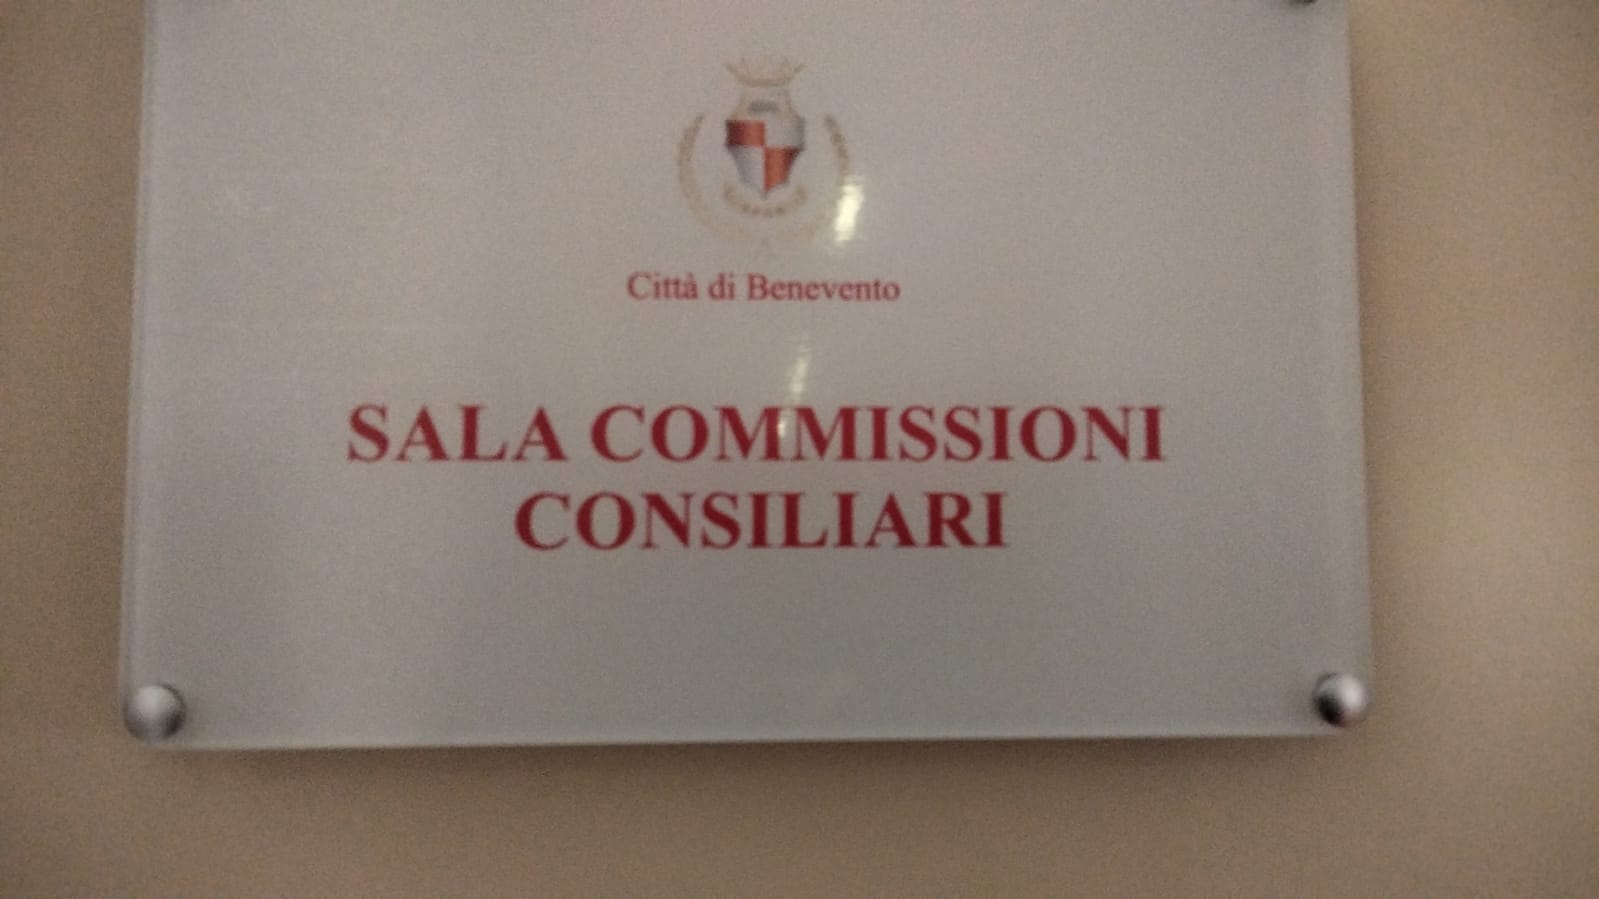 Commissione Pics, Mastella: “Episodio dirigente-consiglieri certamente spiacevole, ma razionalizzare presenze dei funzionari pubblici nelle Commissioni”